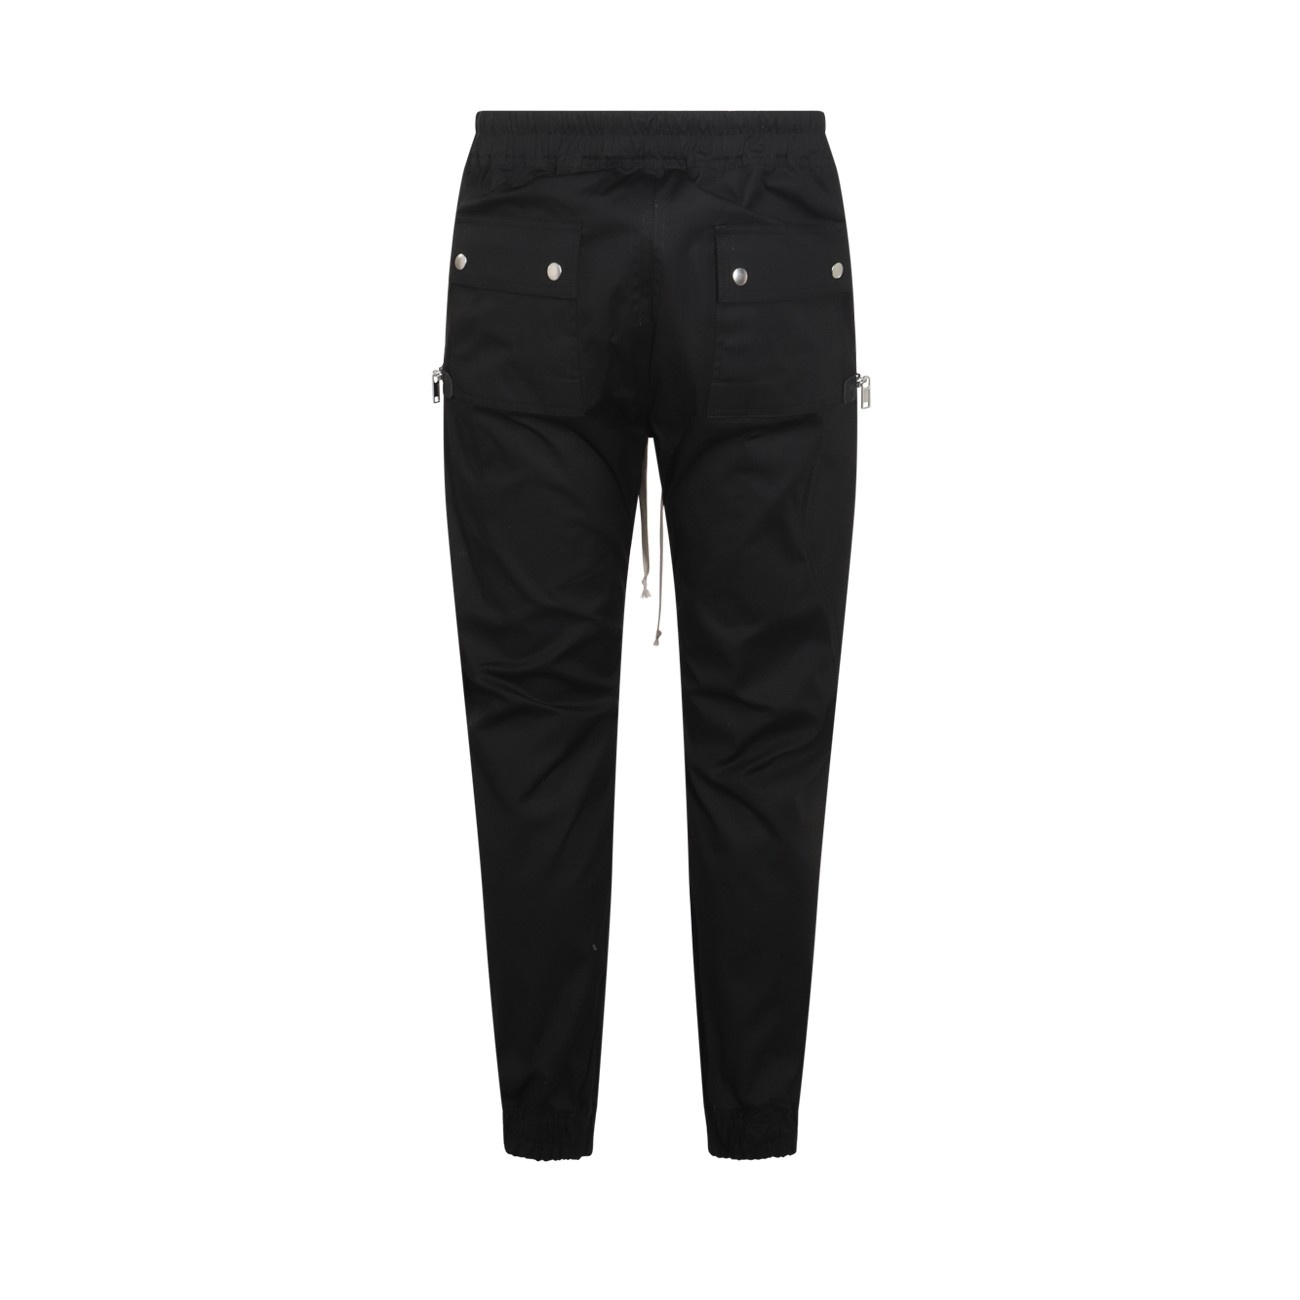 black cotton pants - 2